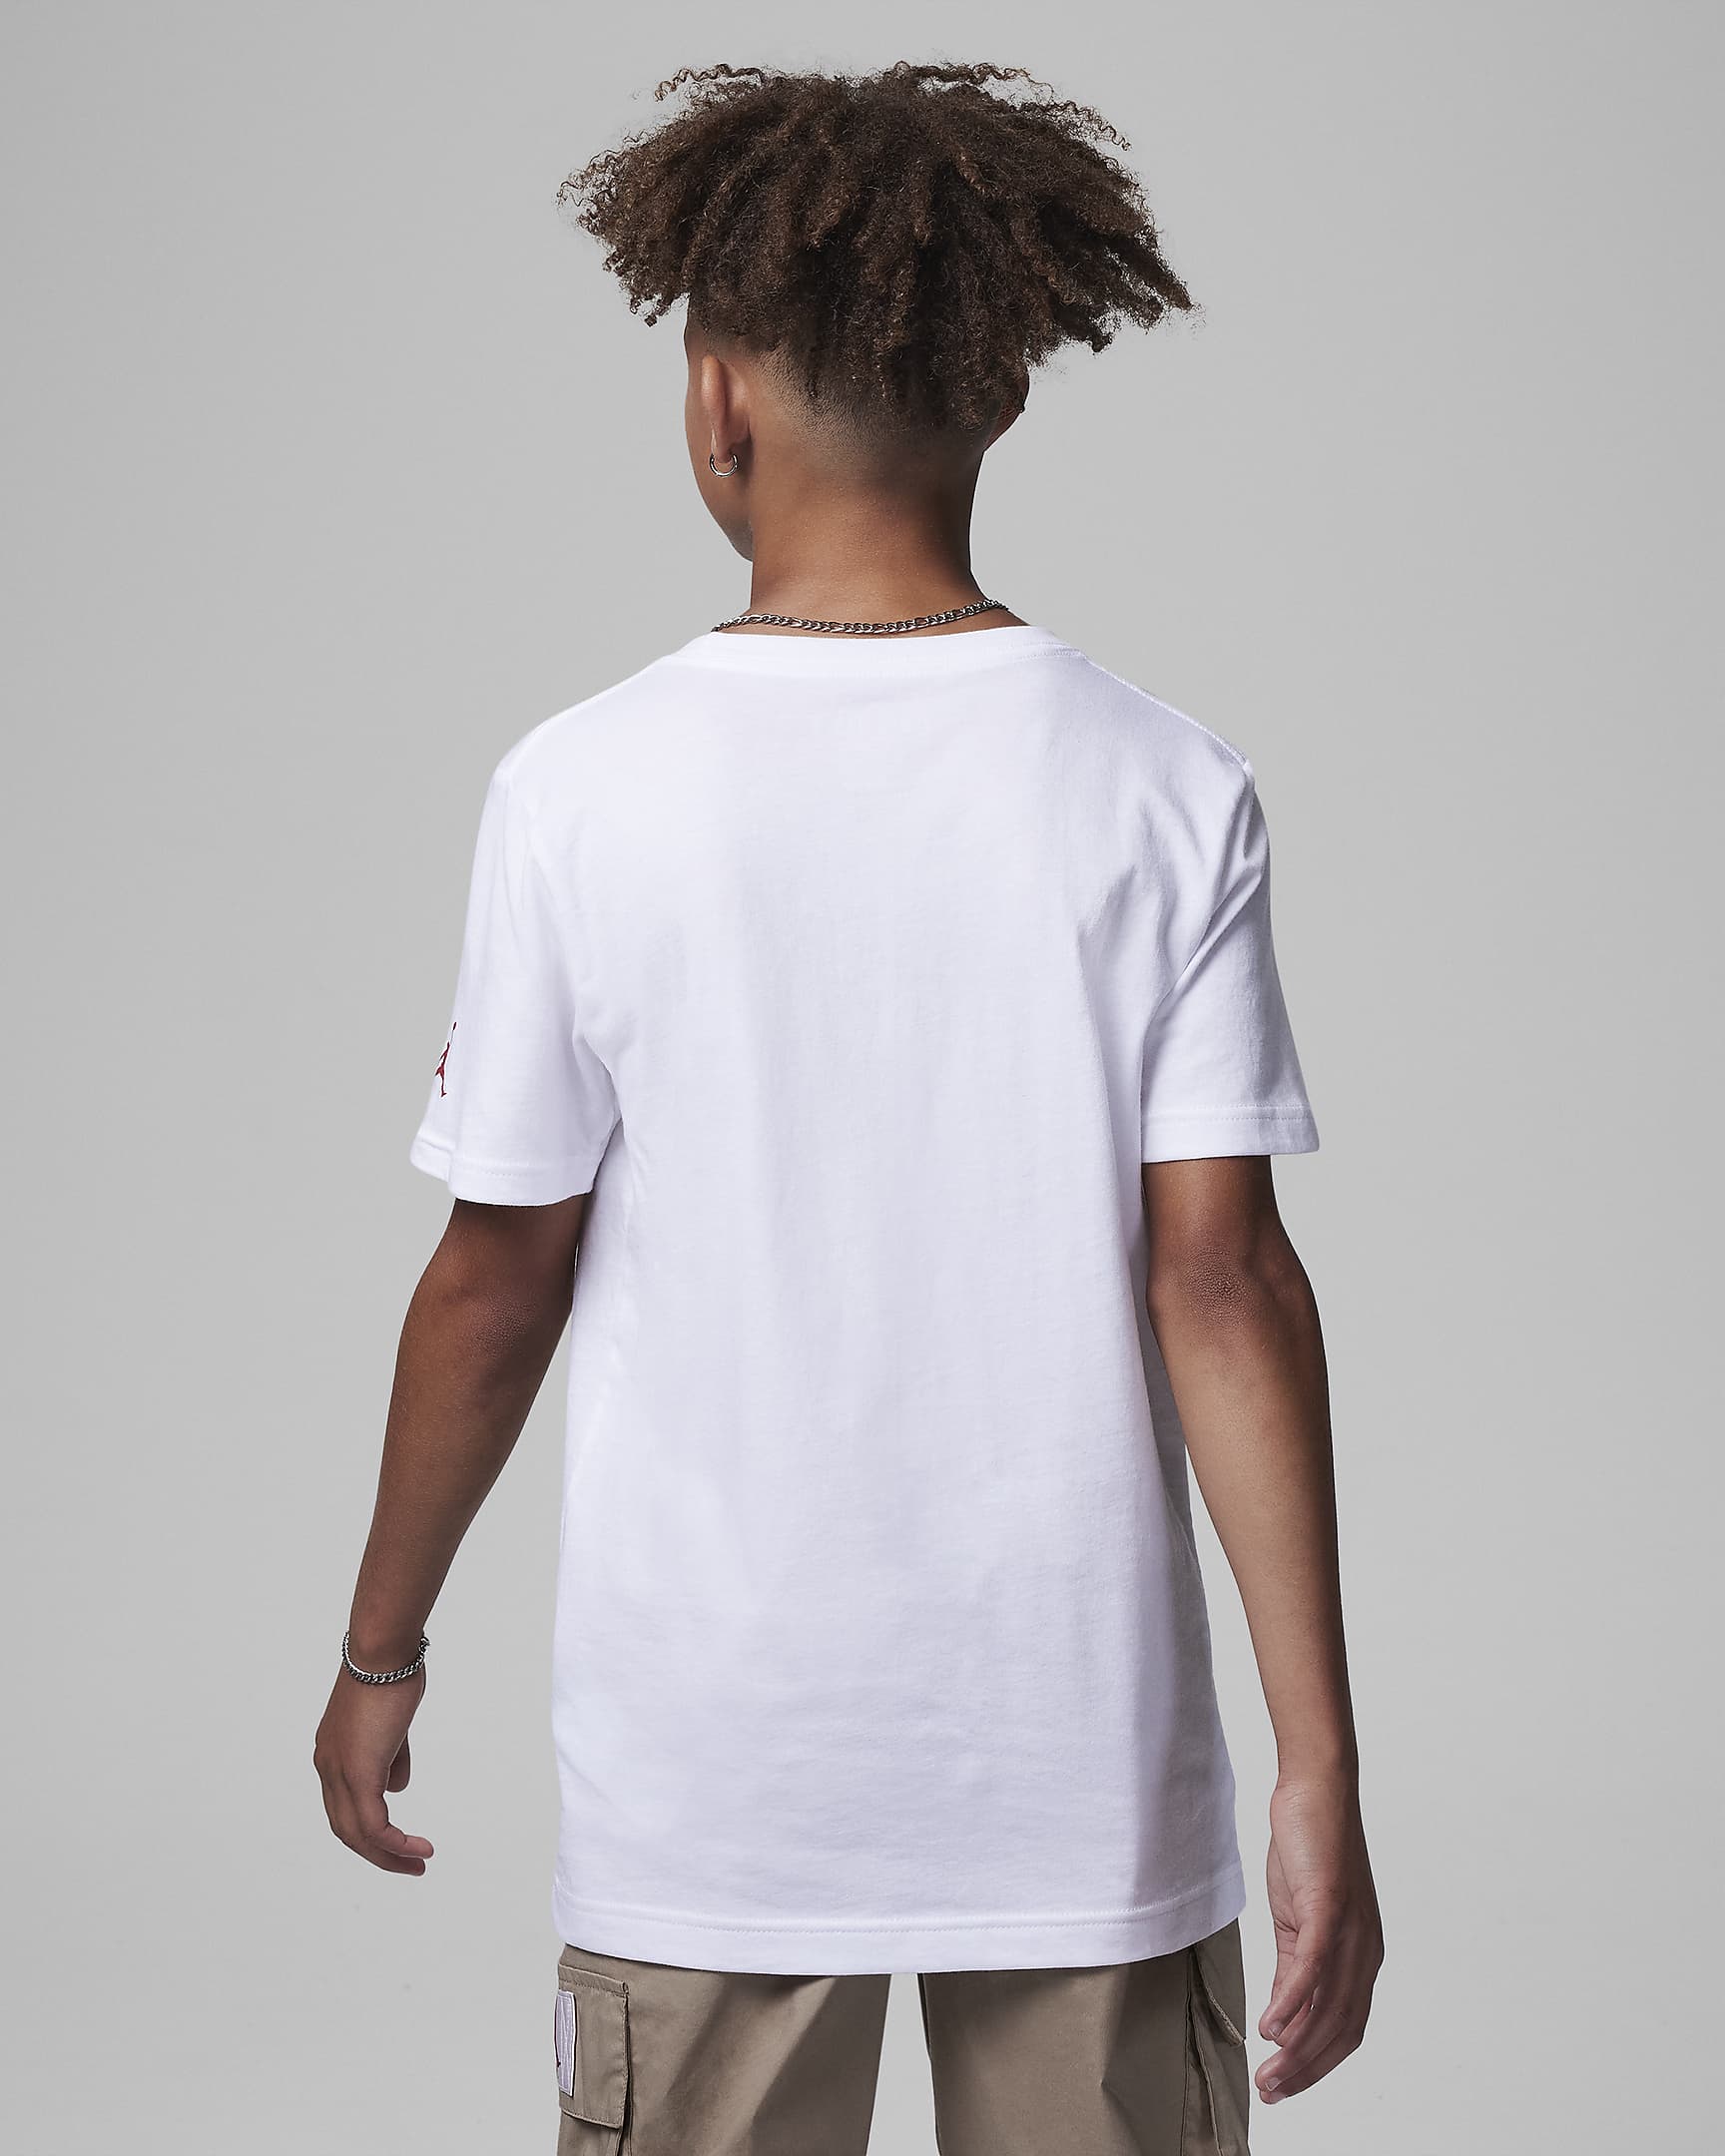 Jordan Air Graphic Tee Big Kids' T-Shirt. Nike.com